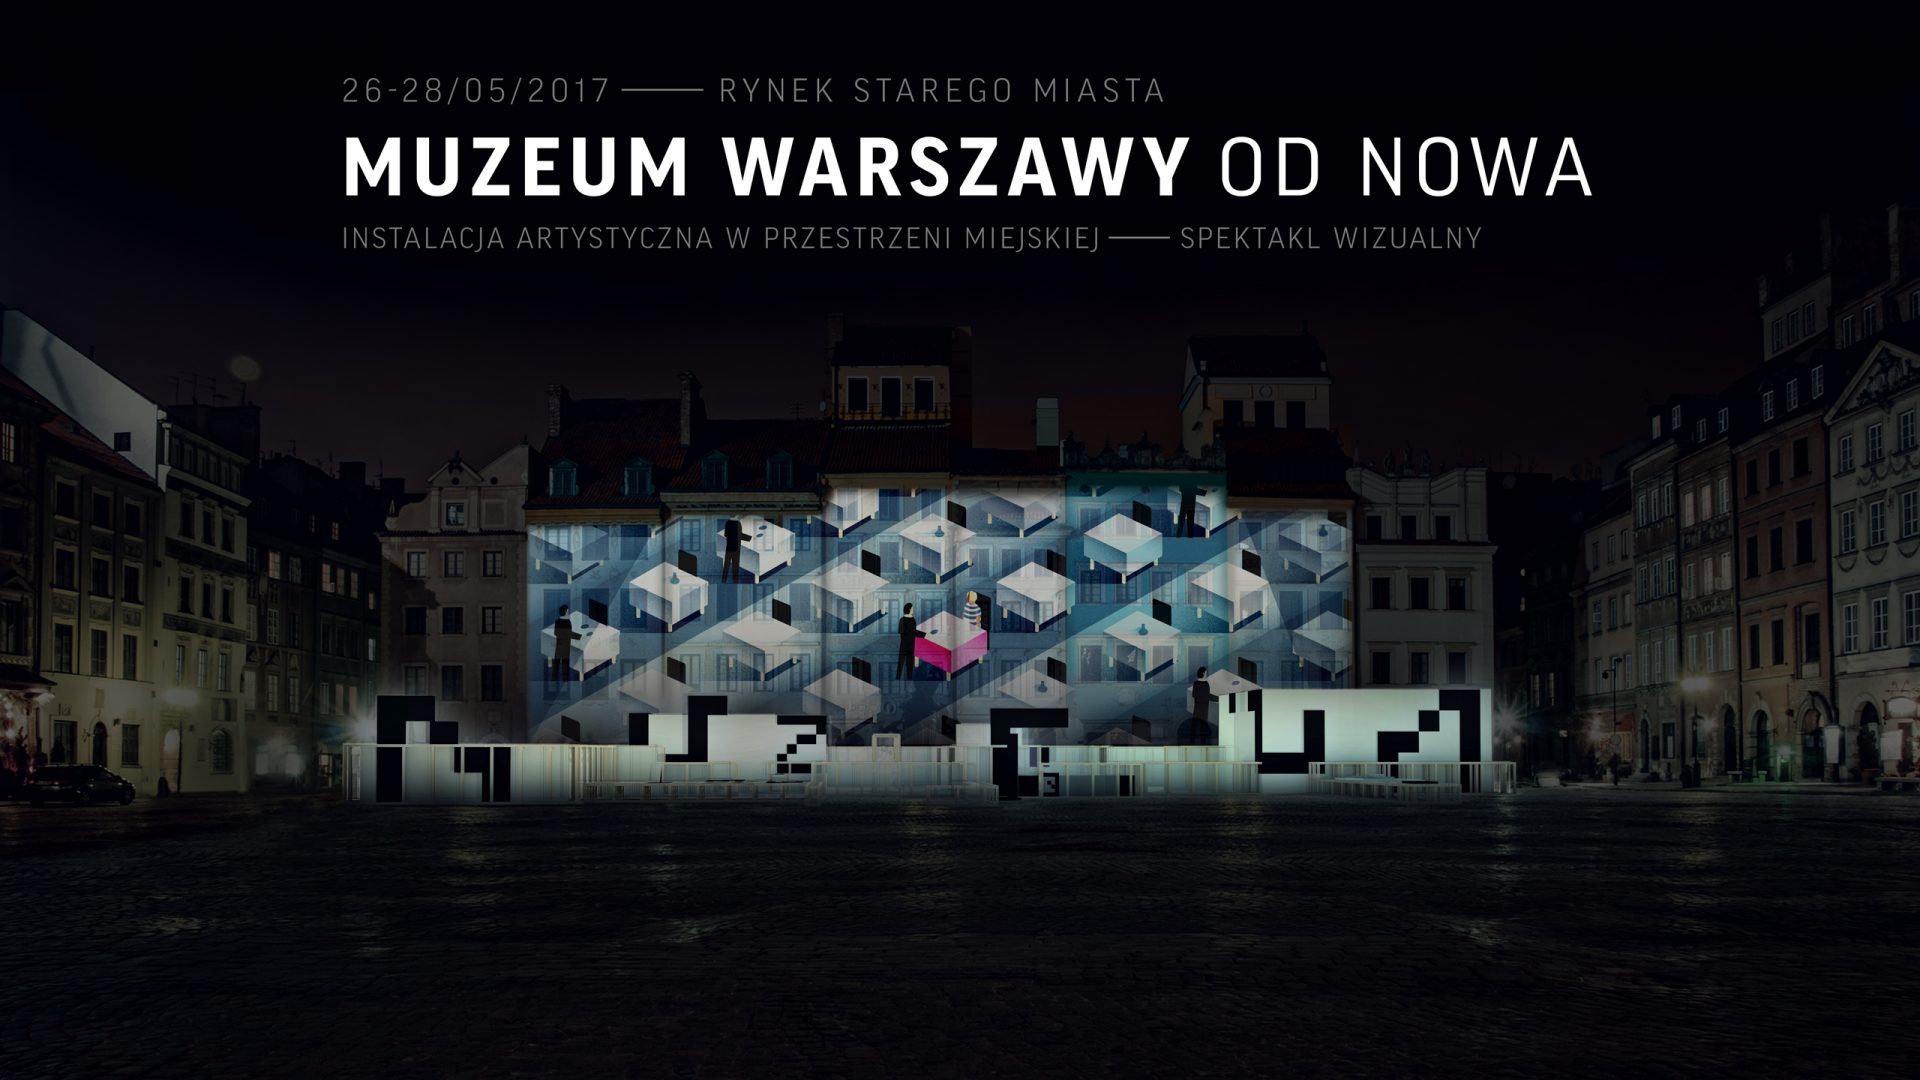 Zaczynamy od nowa! Witamy w Muzeum Warszawy